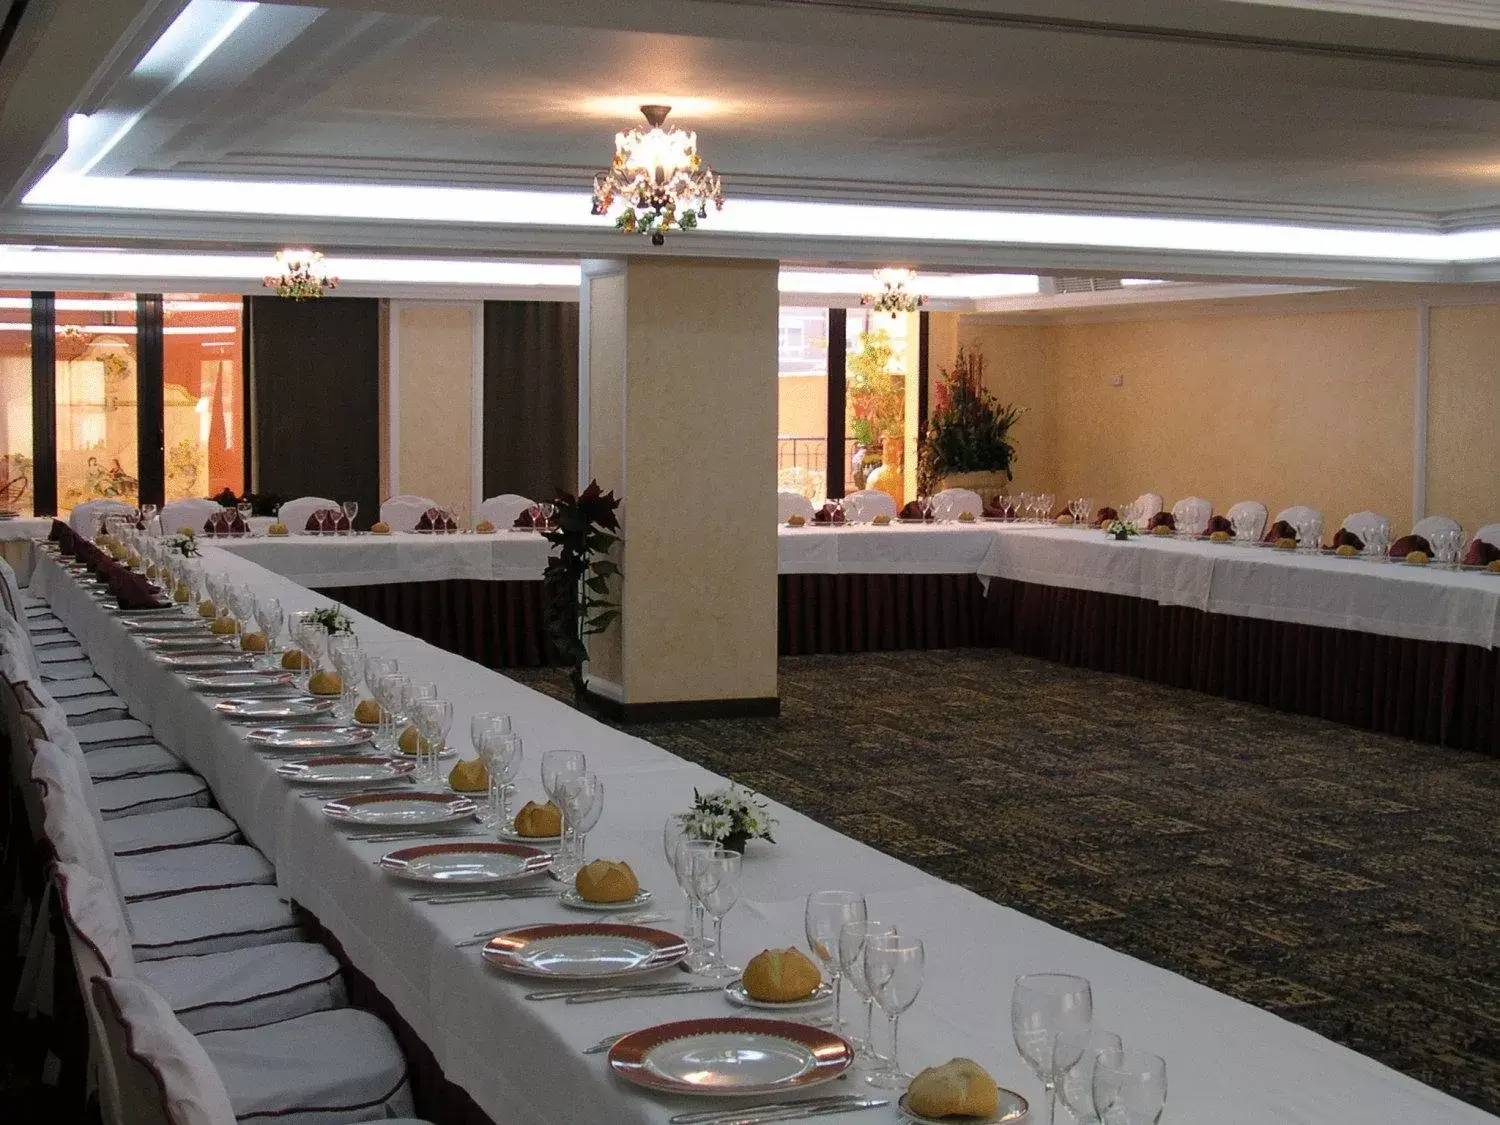 Banquet/Function facilities, Banquet Facilities in Santiago